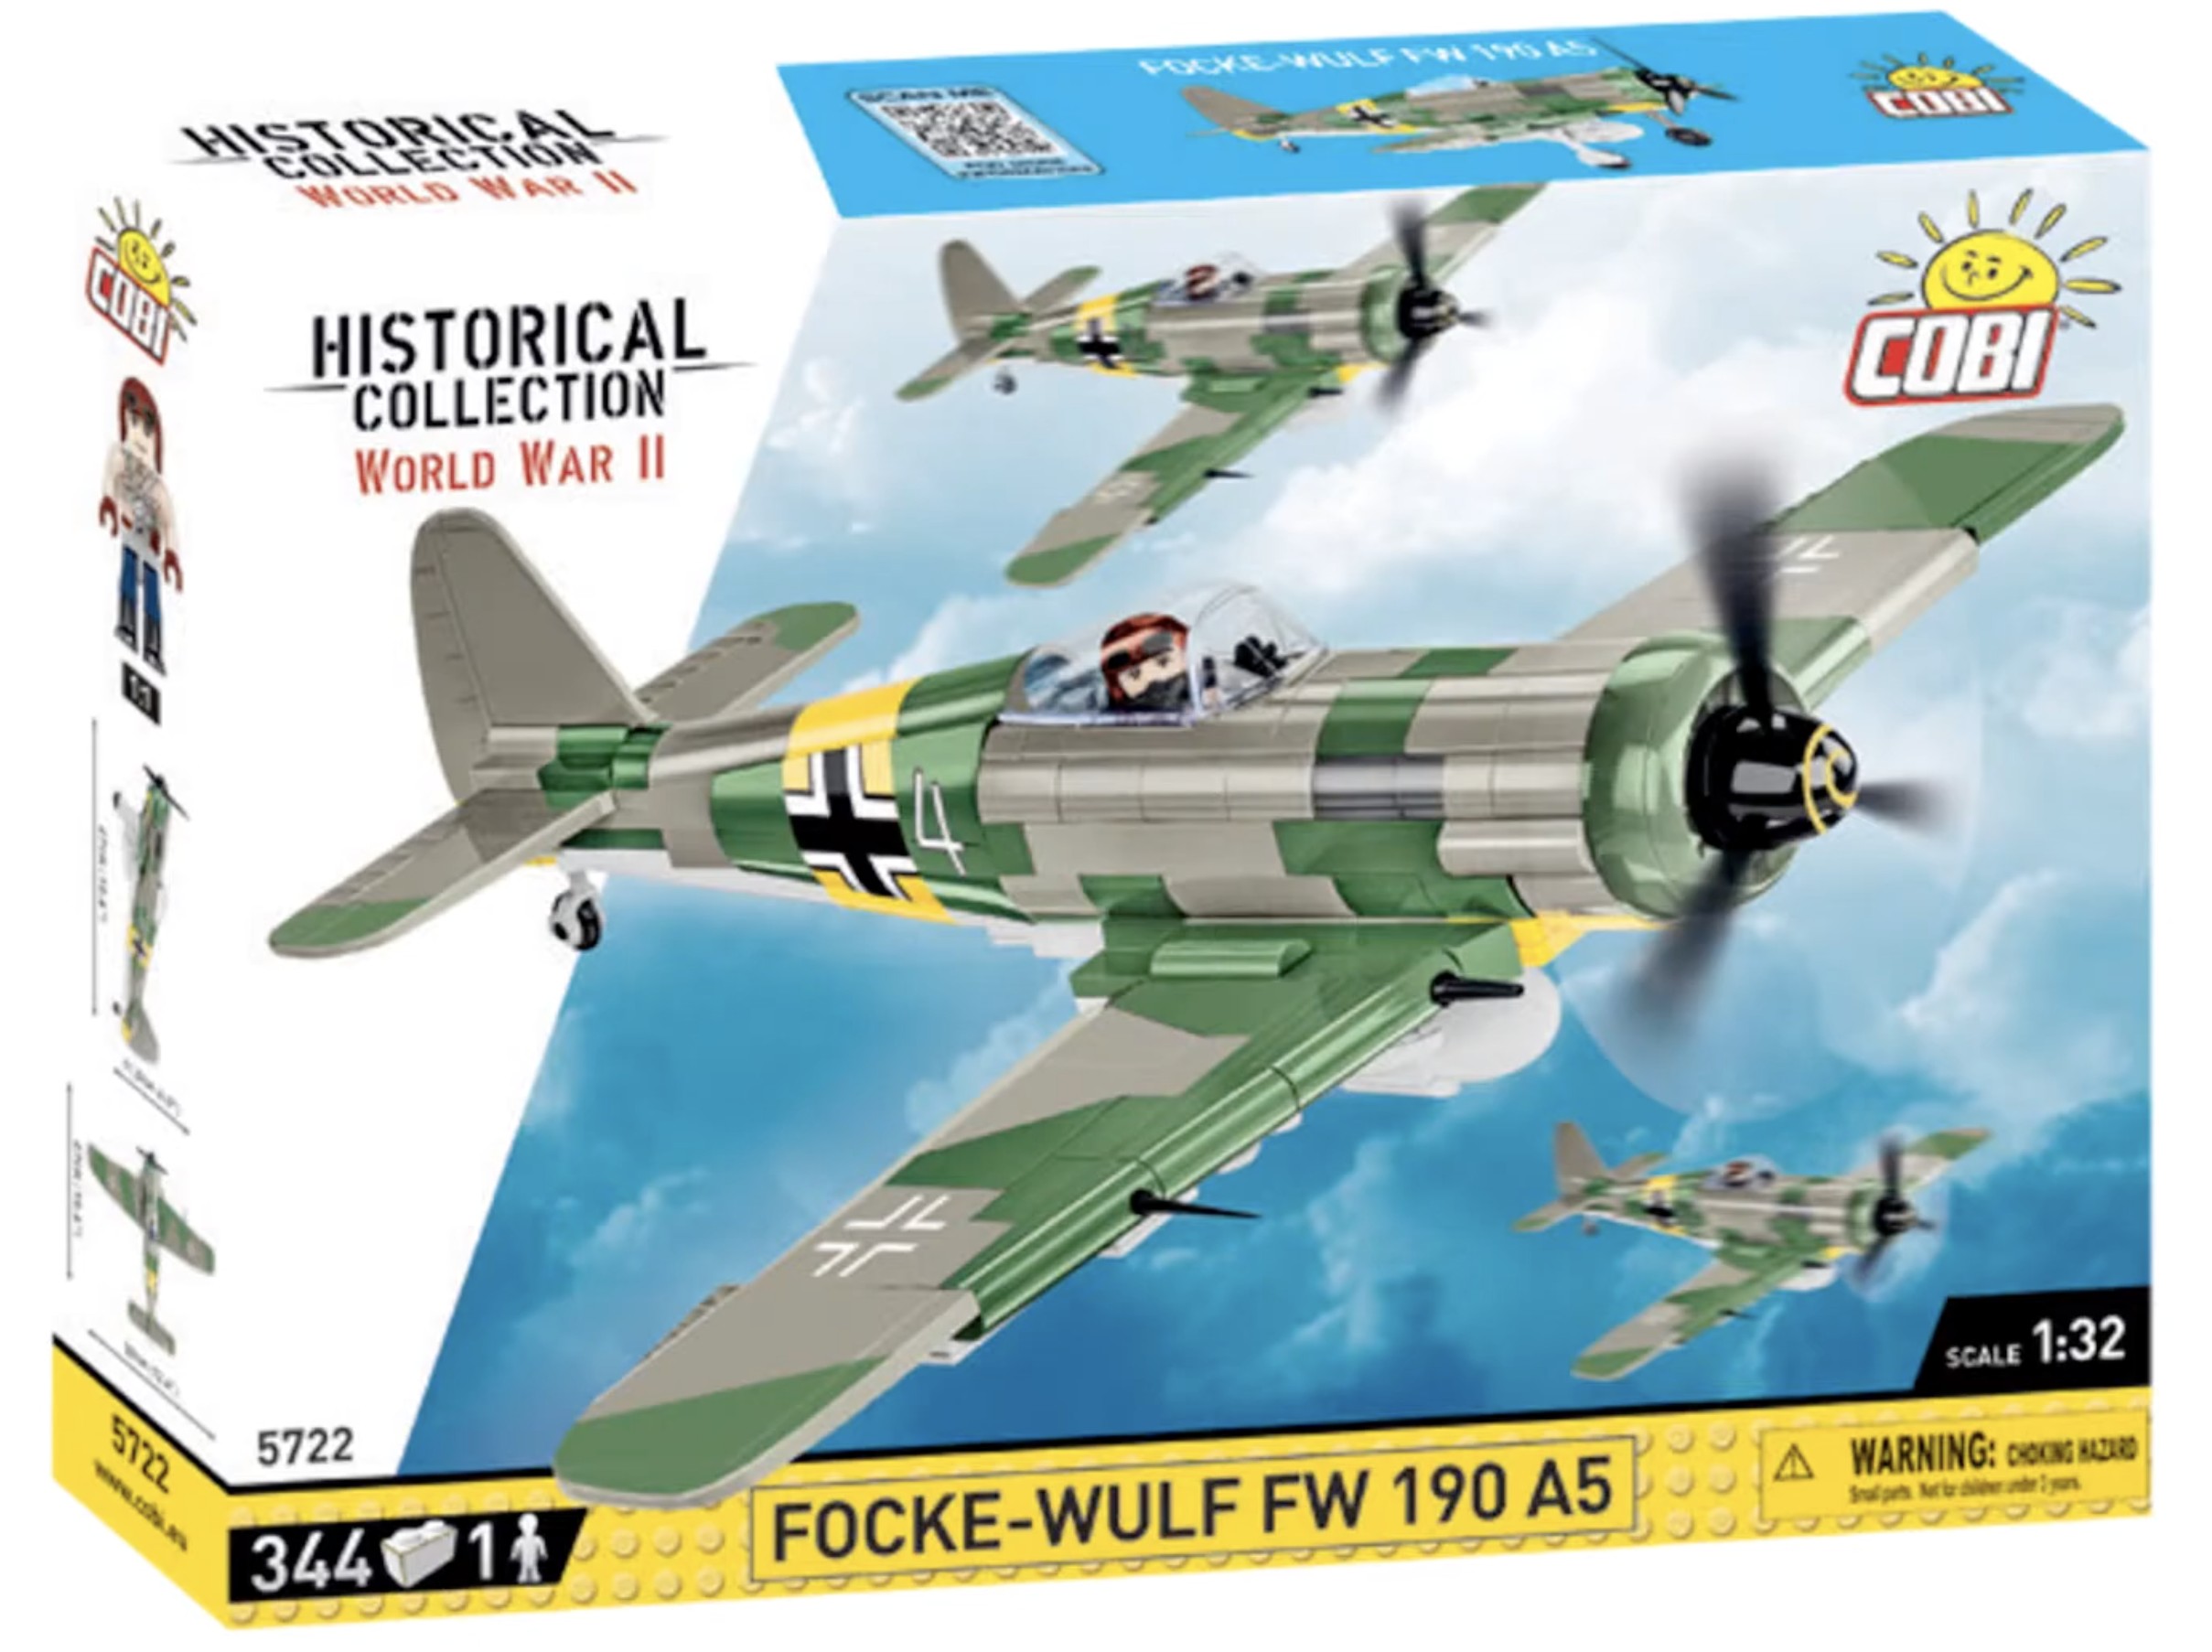 5722 - Focke-Wulf FW 190 A5